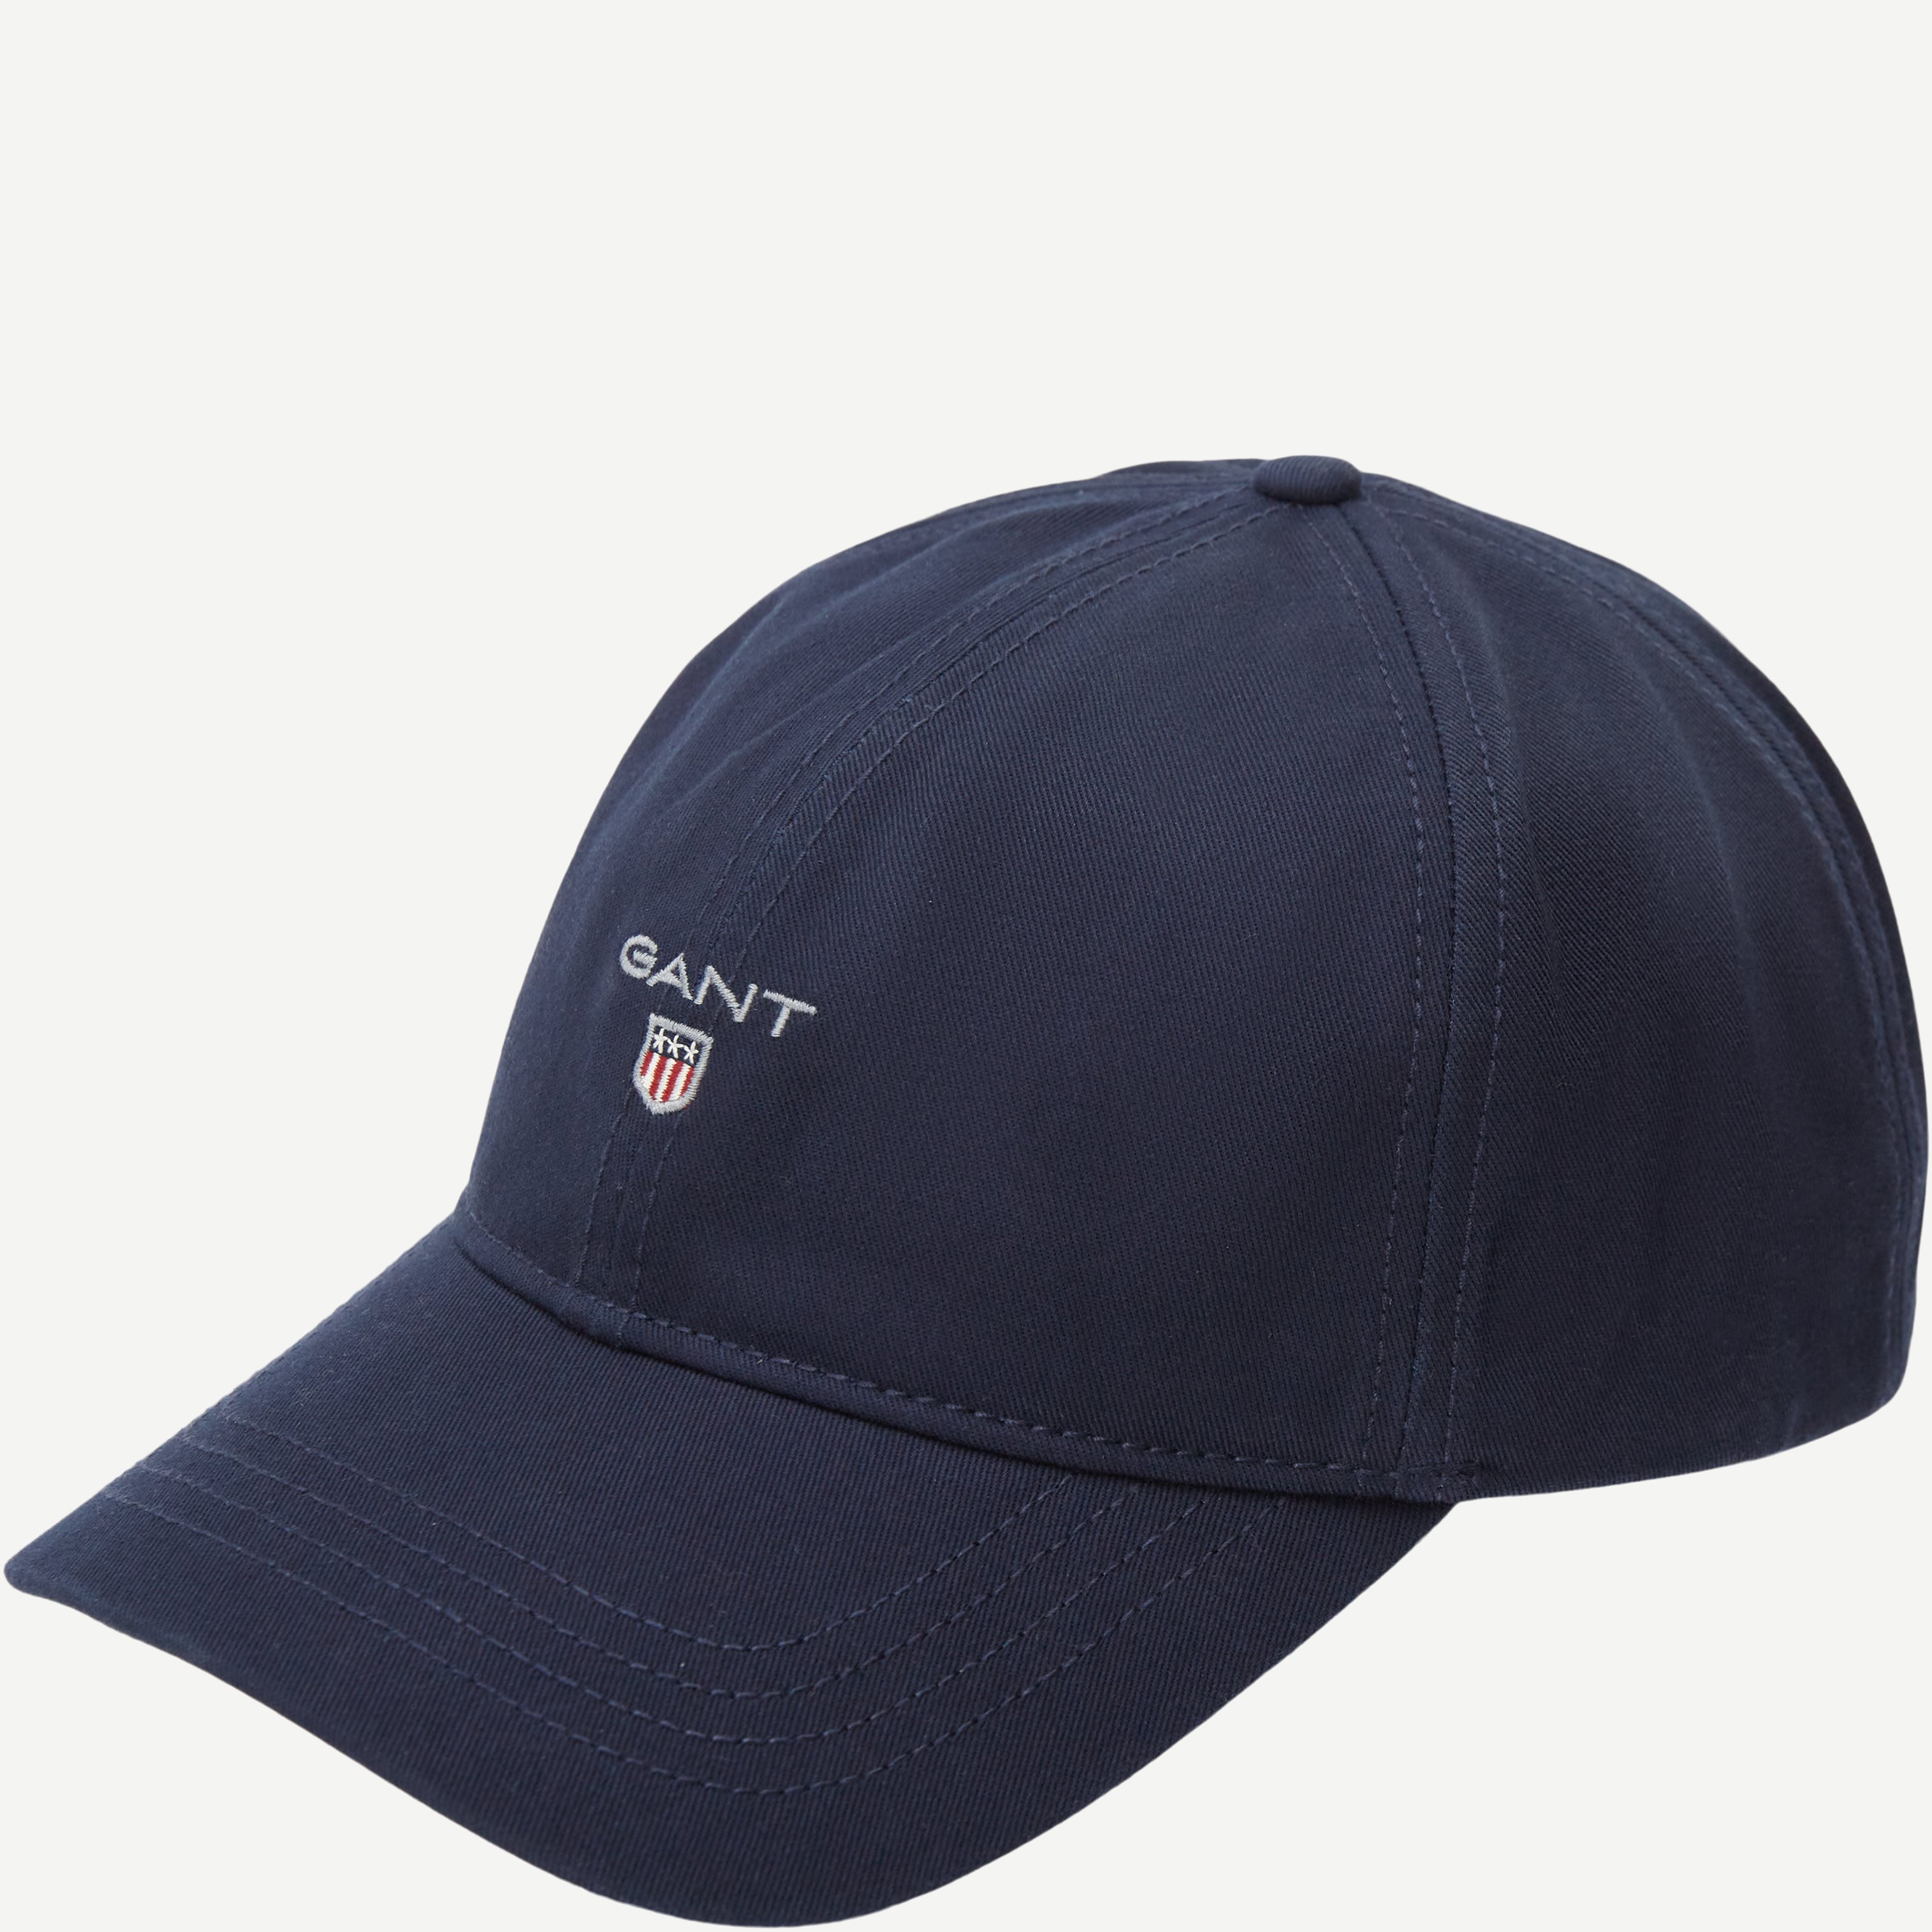 Twill cap - Caps - Blå